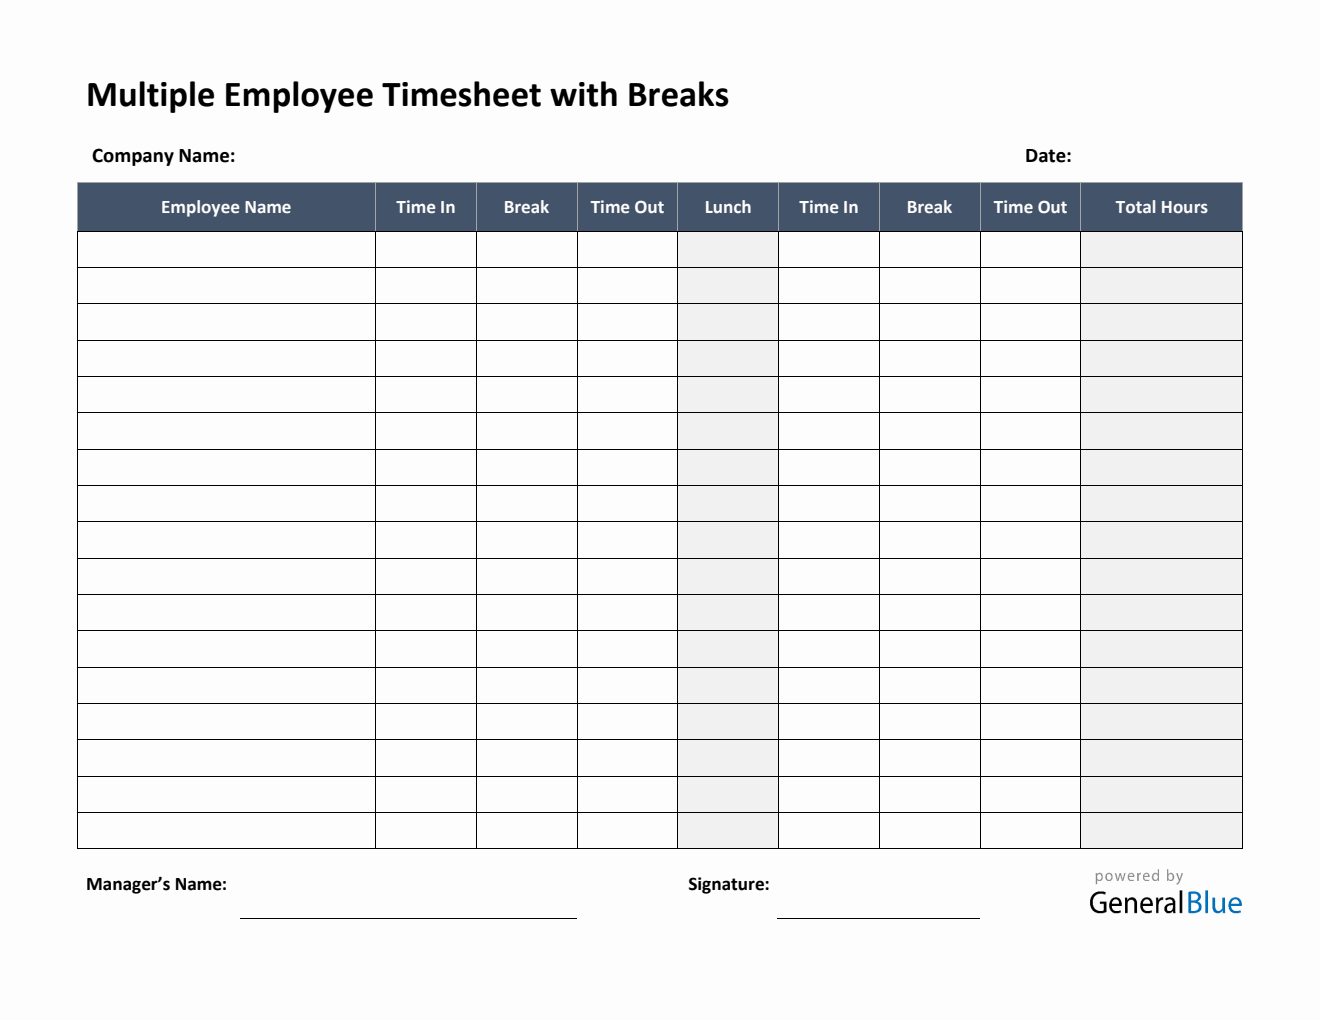 Multiple Employee Timesheet With Breaks in PDF